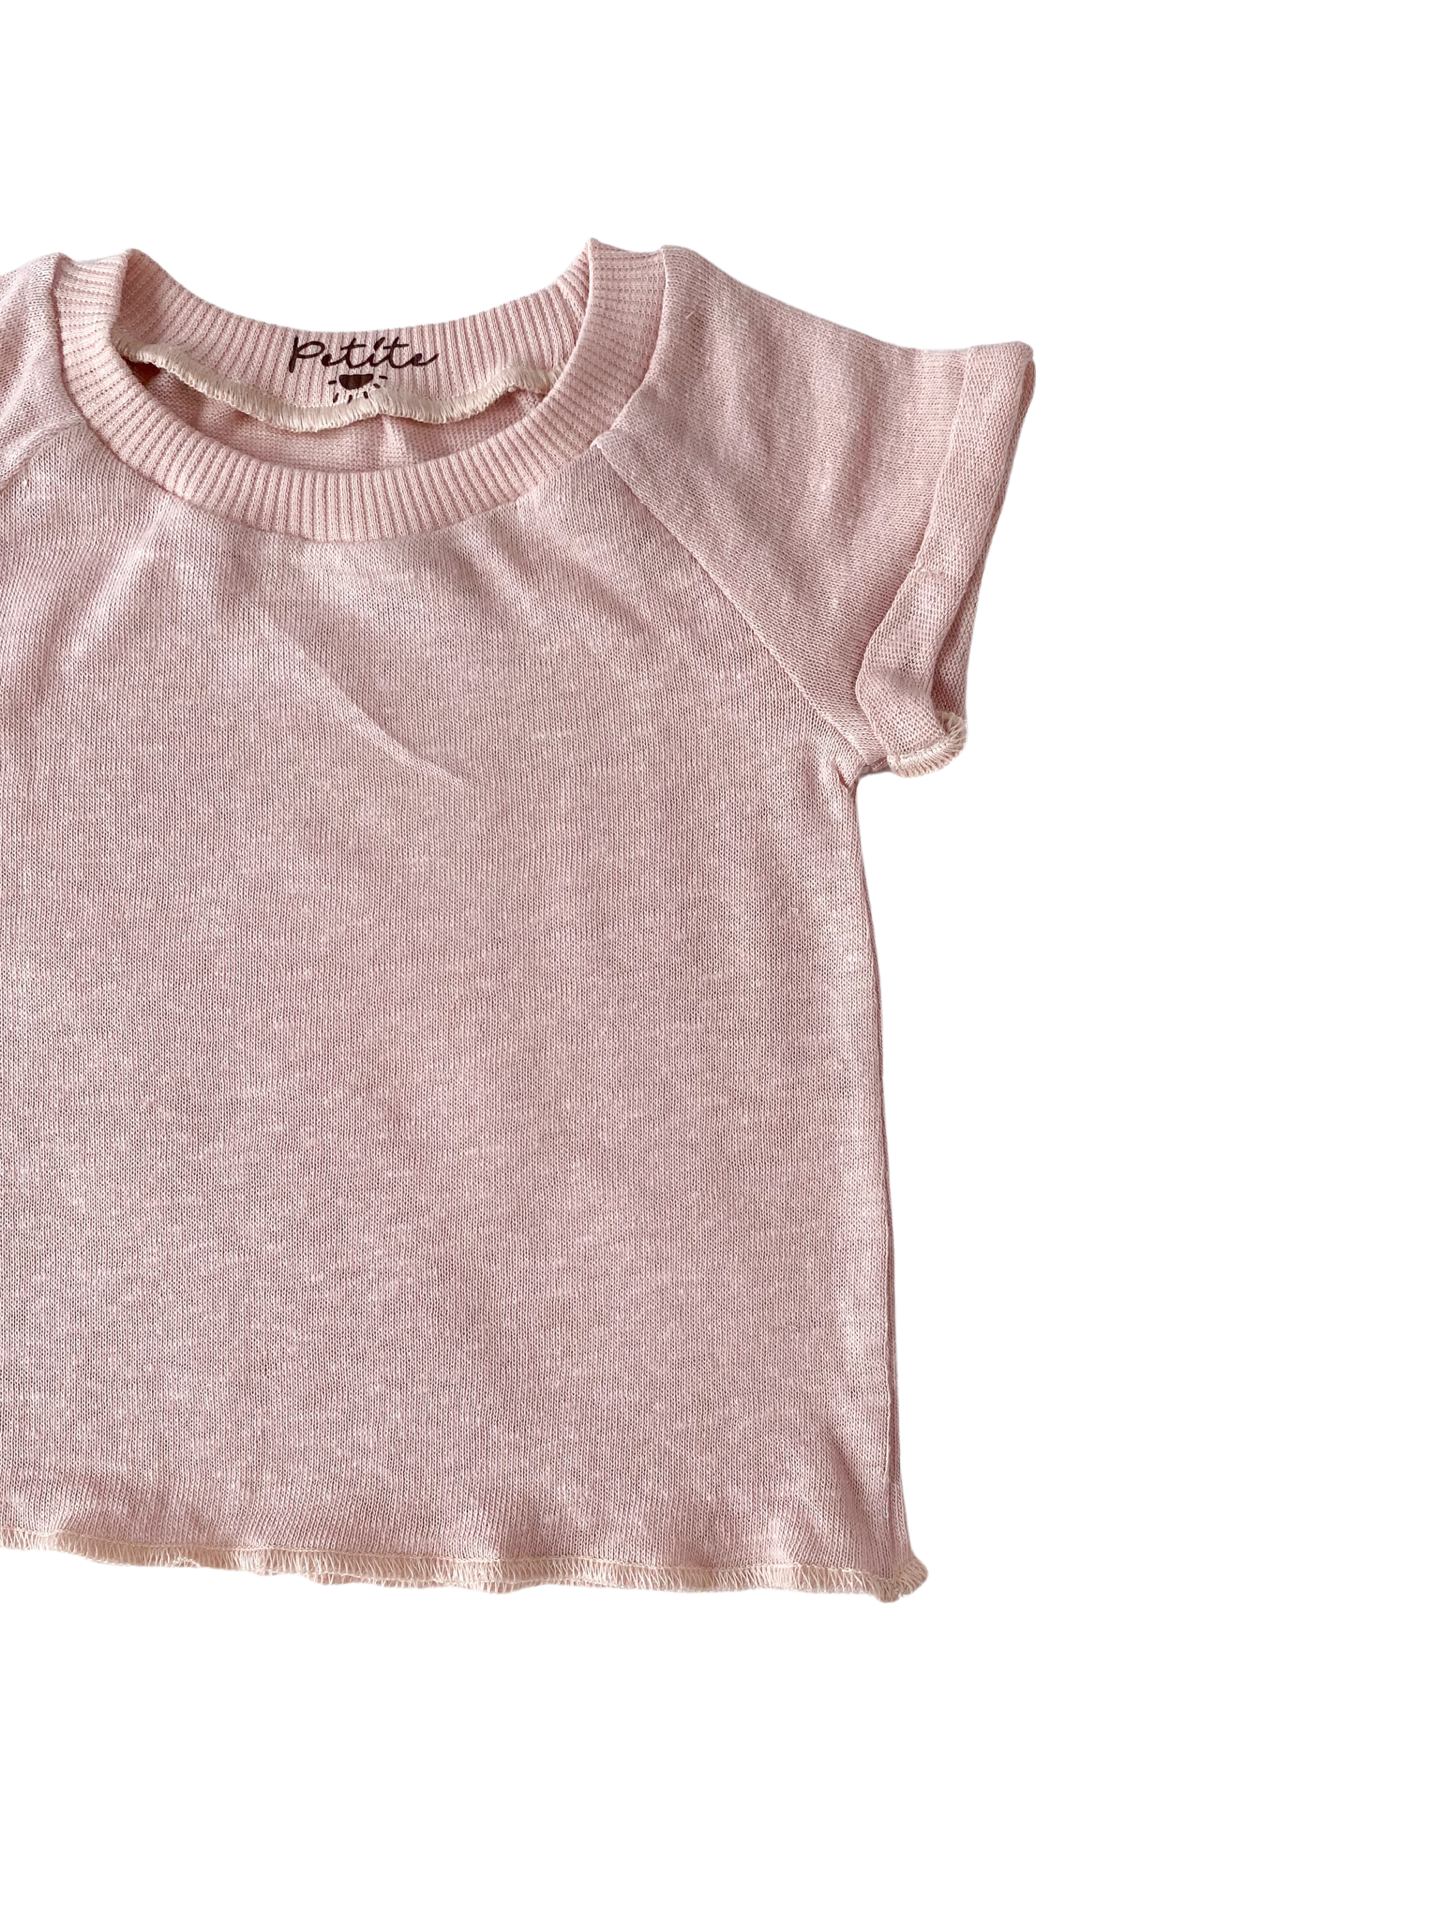 Baby T-shirt / linen